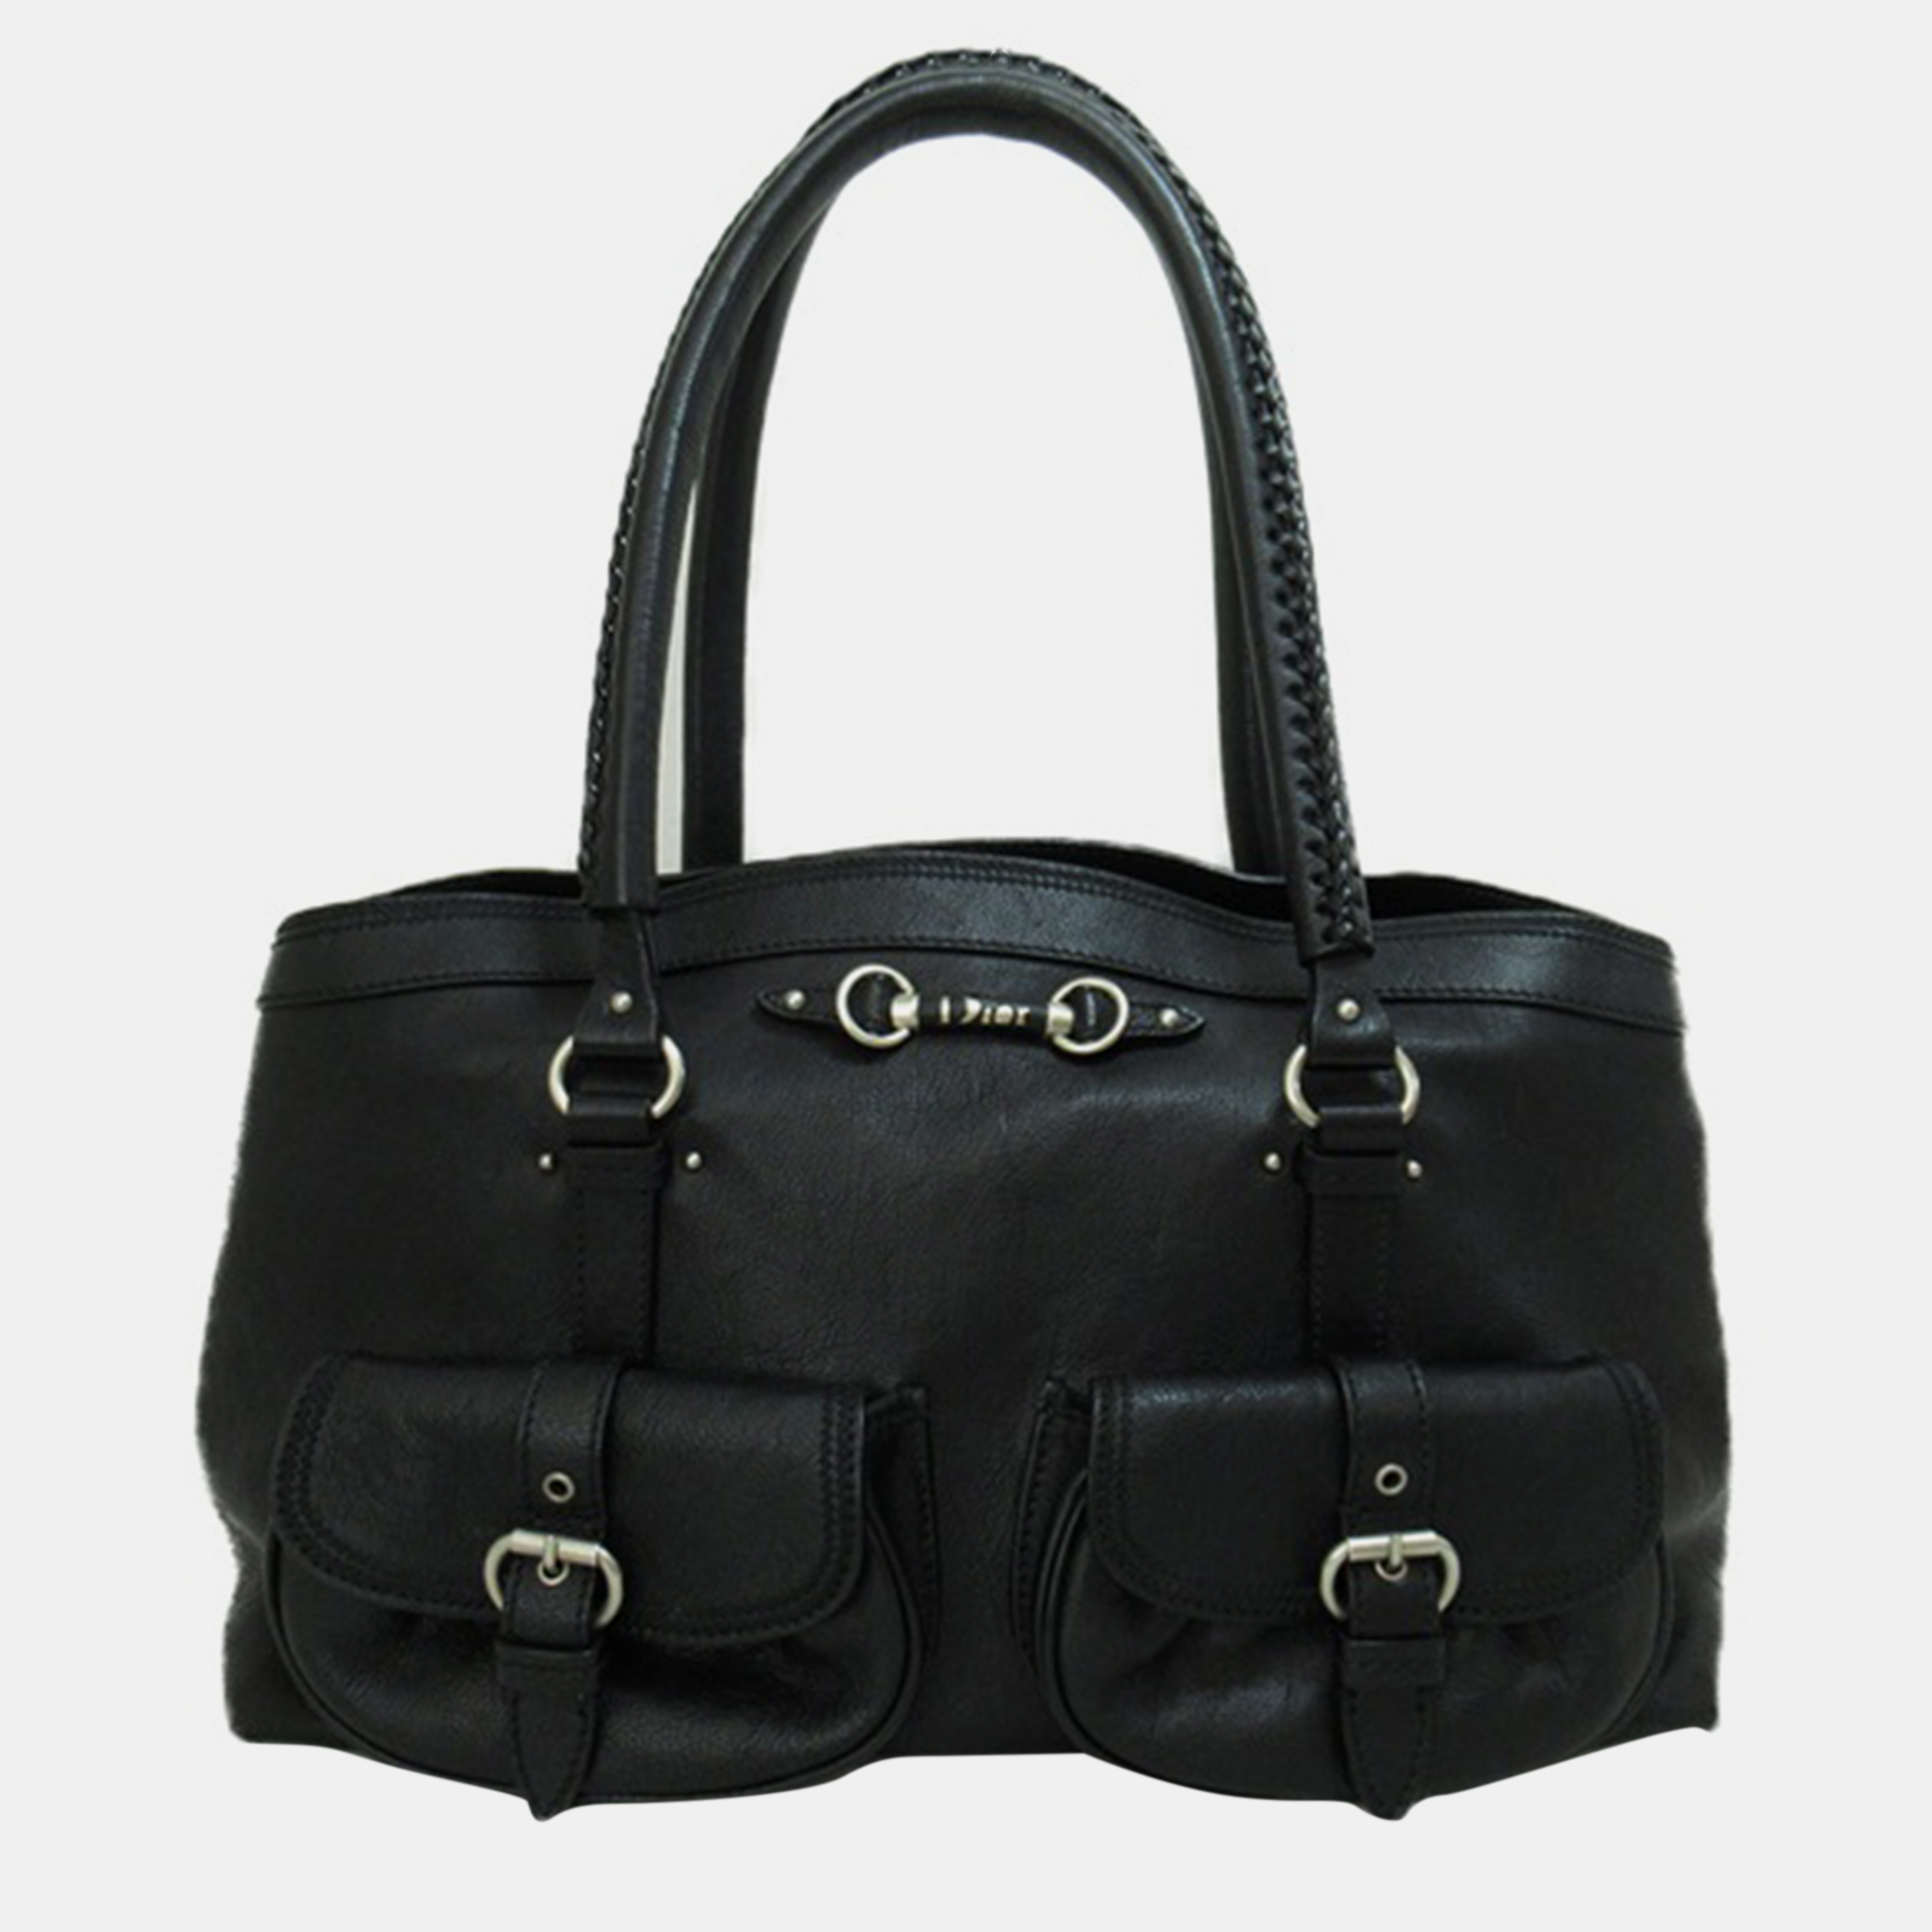 Dior Black Leather Pocket Tote Bag